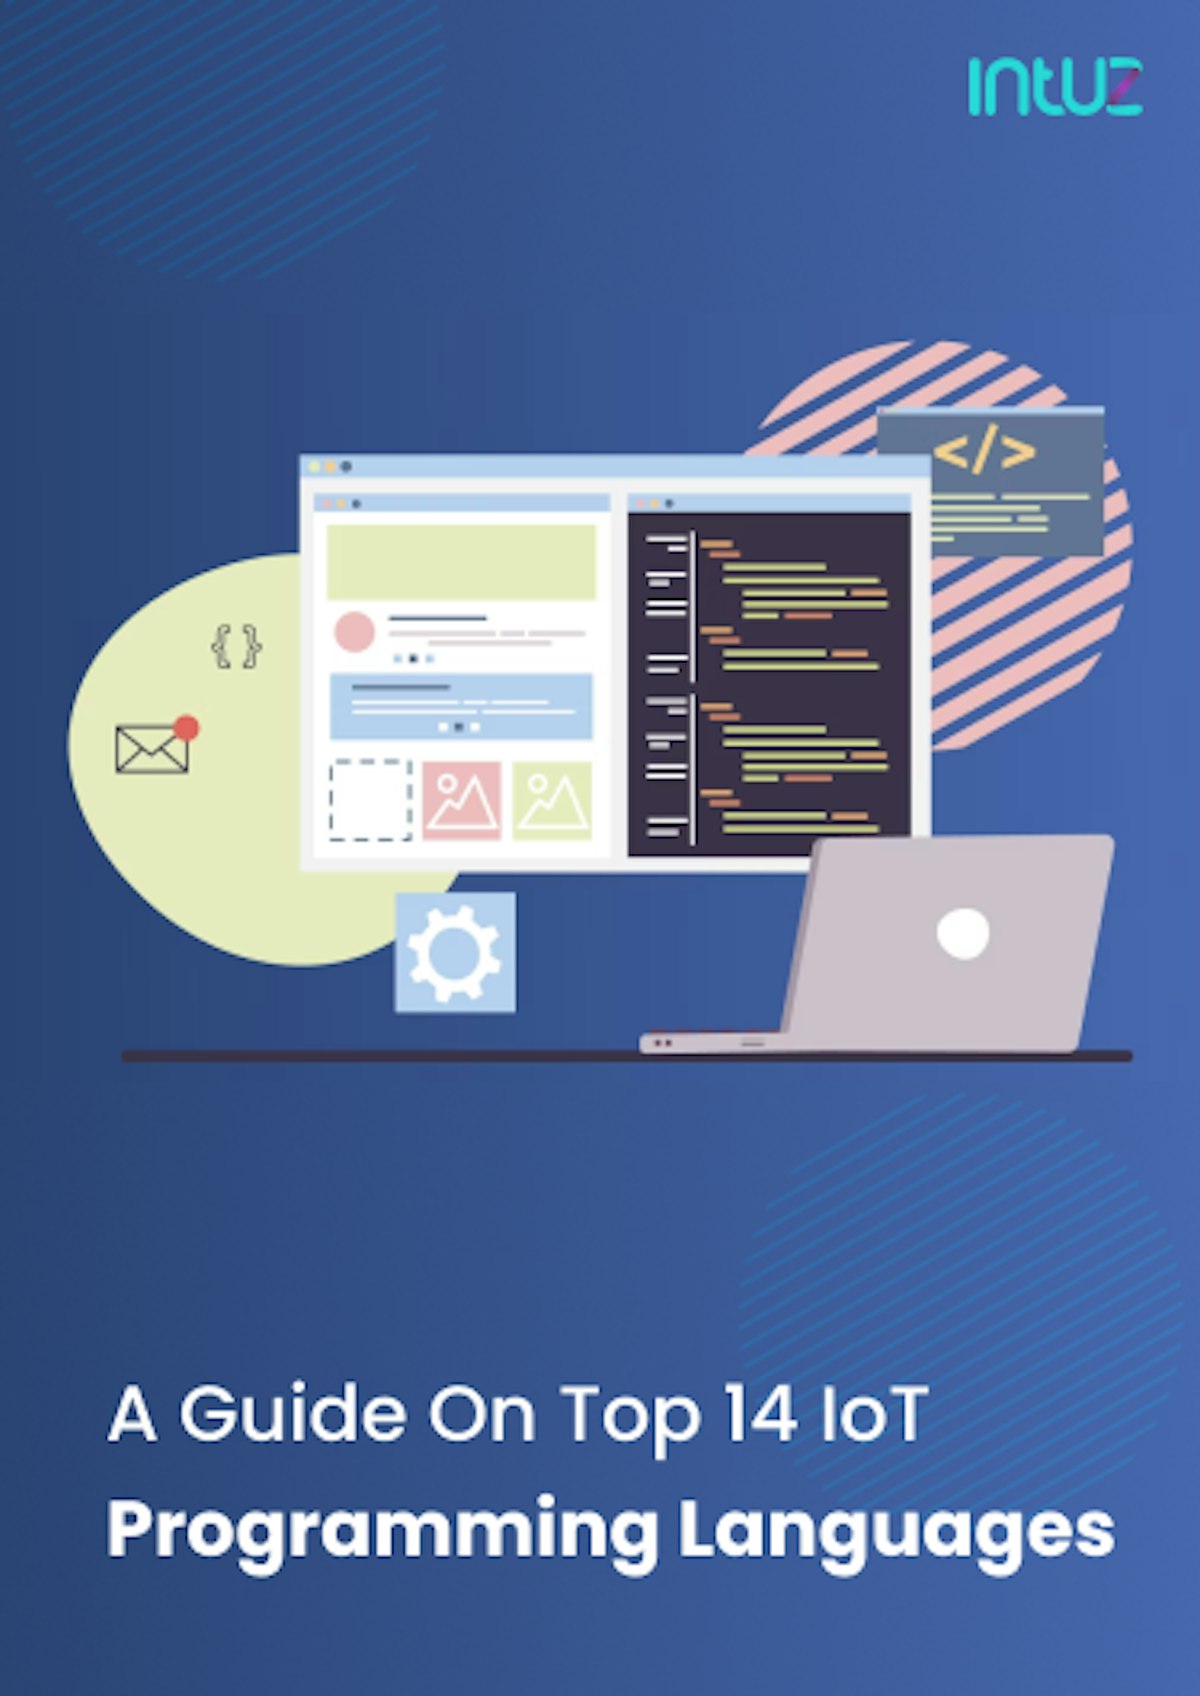 Top 14 IoT Programming Languages